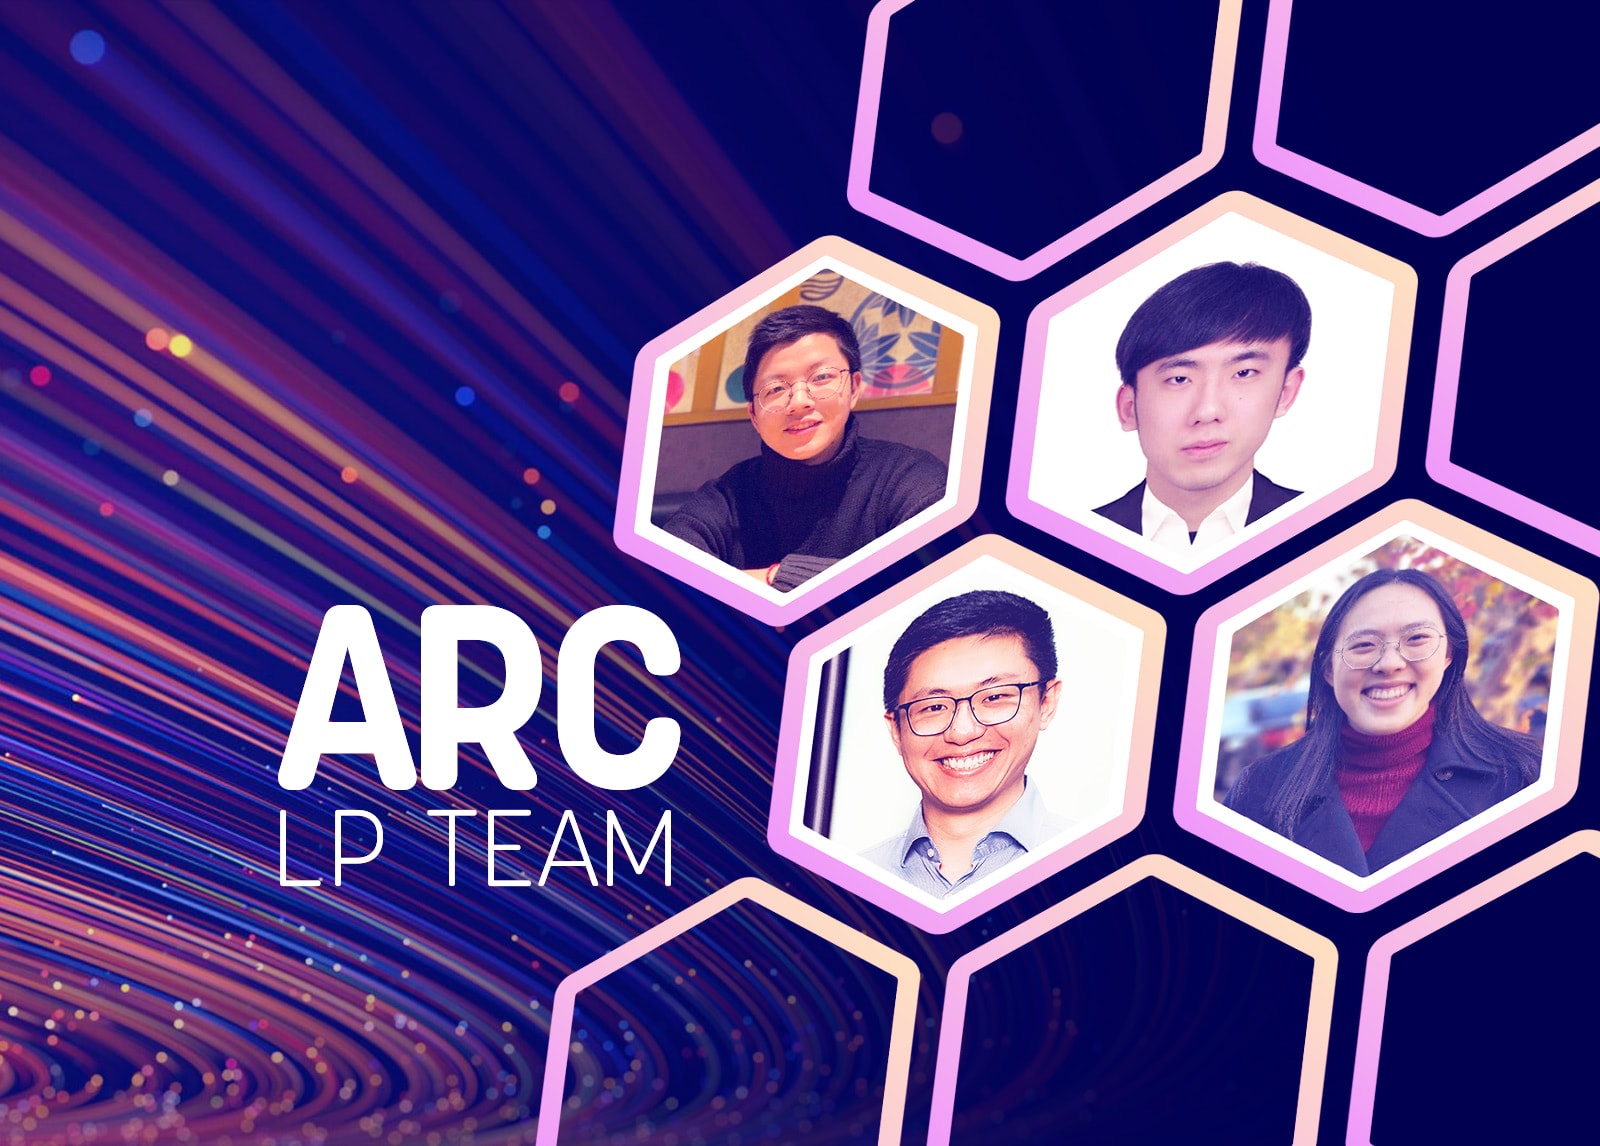 Arc Linkage Program Team Spotlight